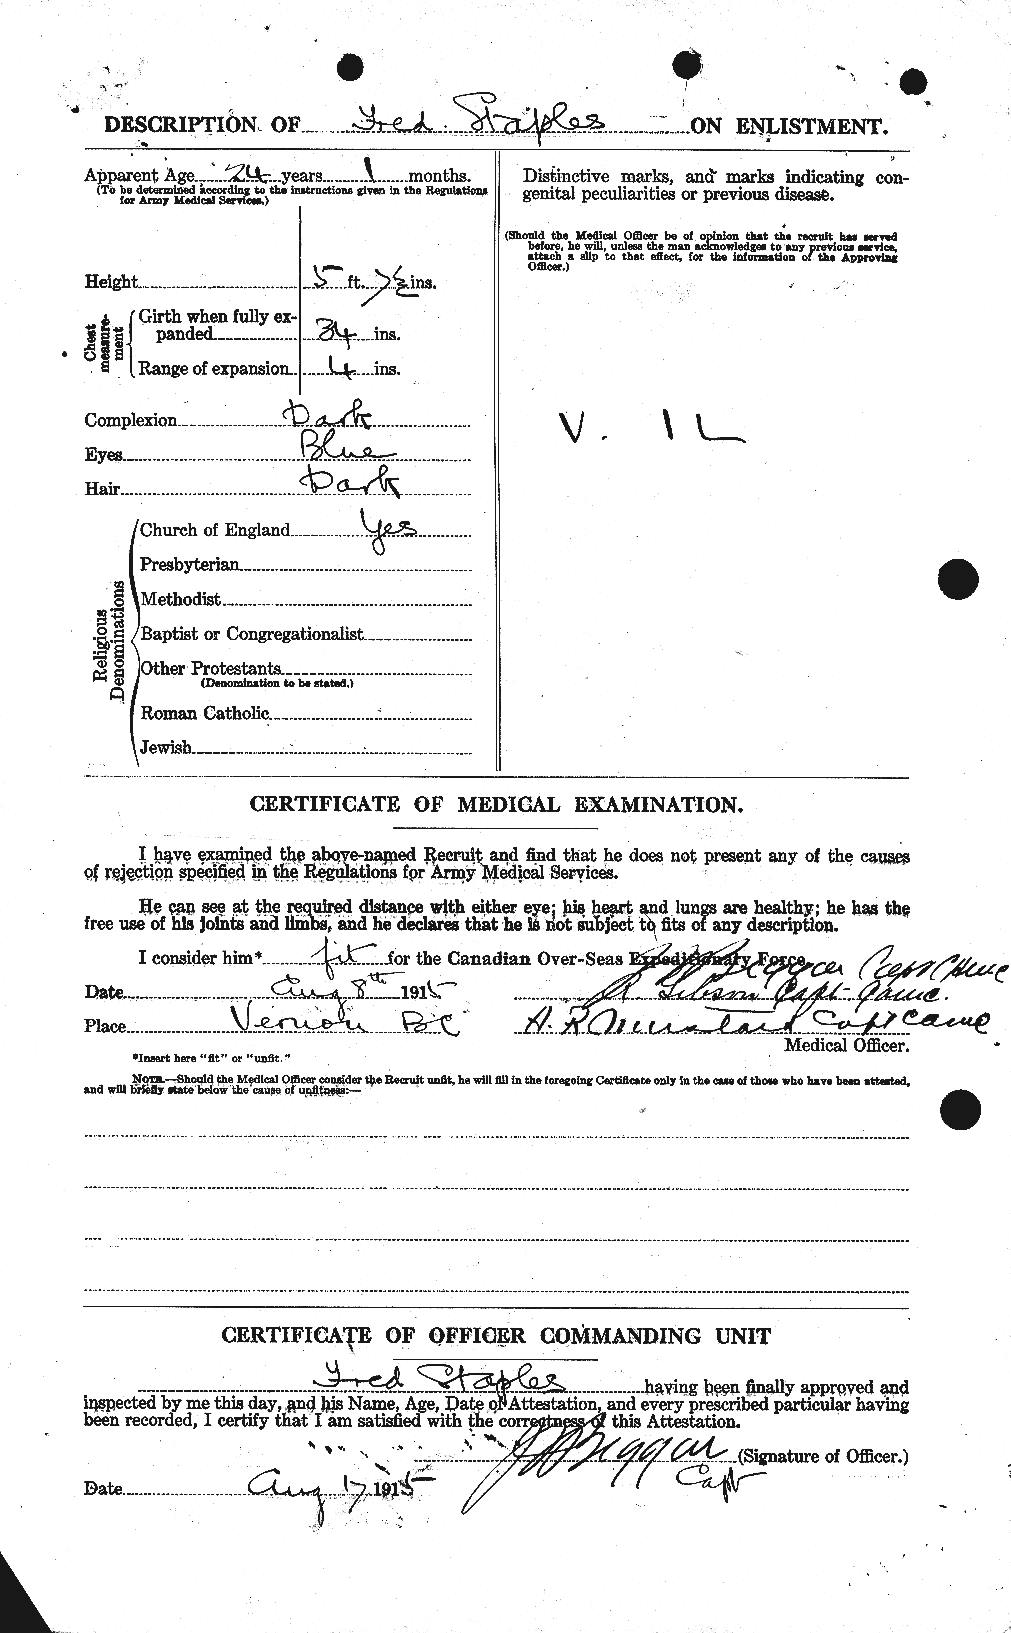 Dossiers du Personnel de la Première Guerre mondiale - CEC 114183b